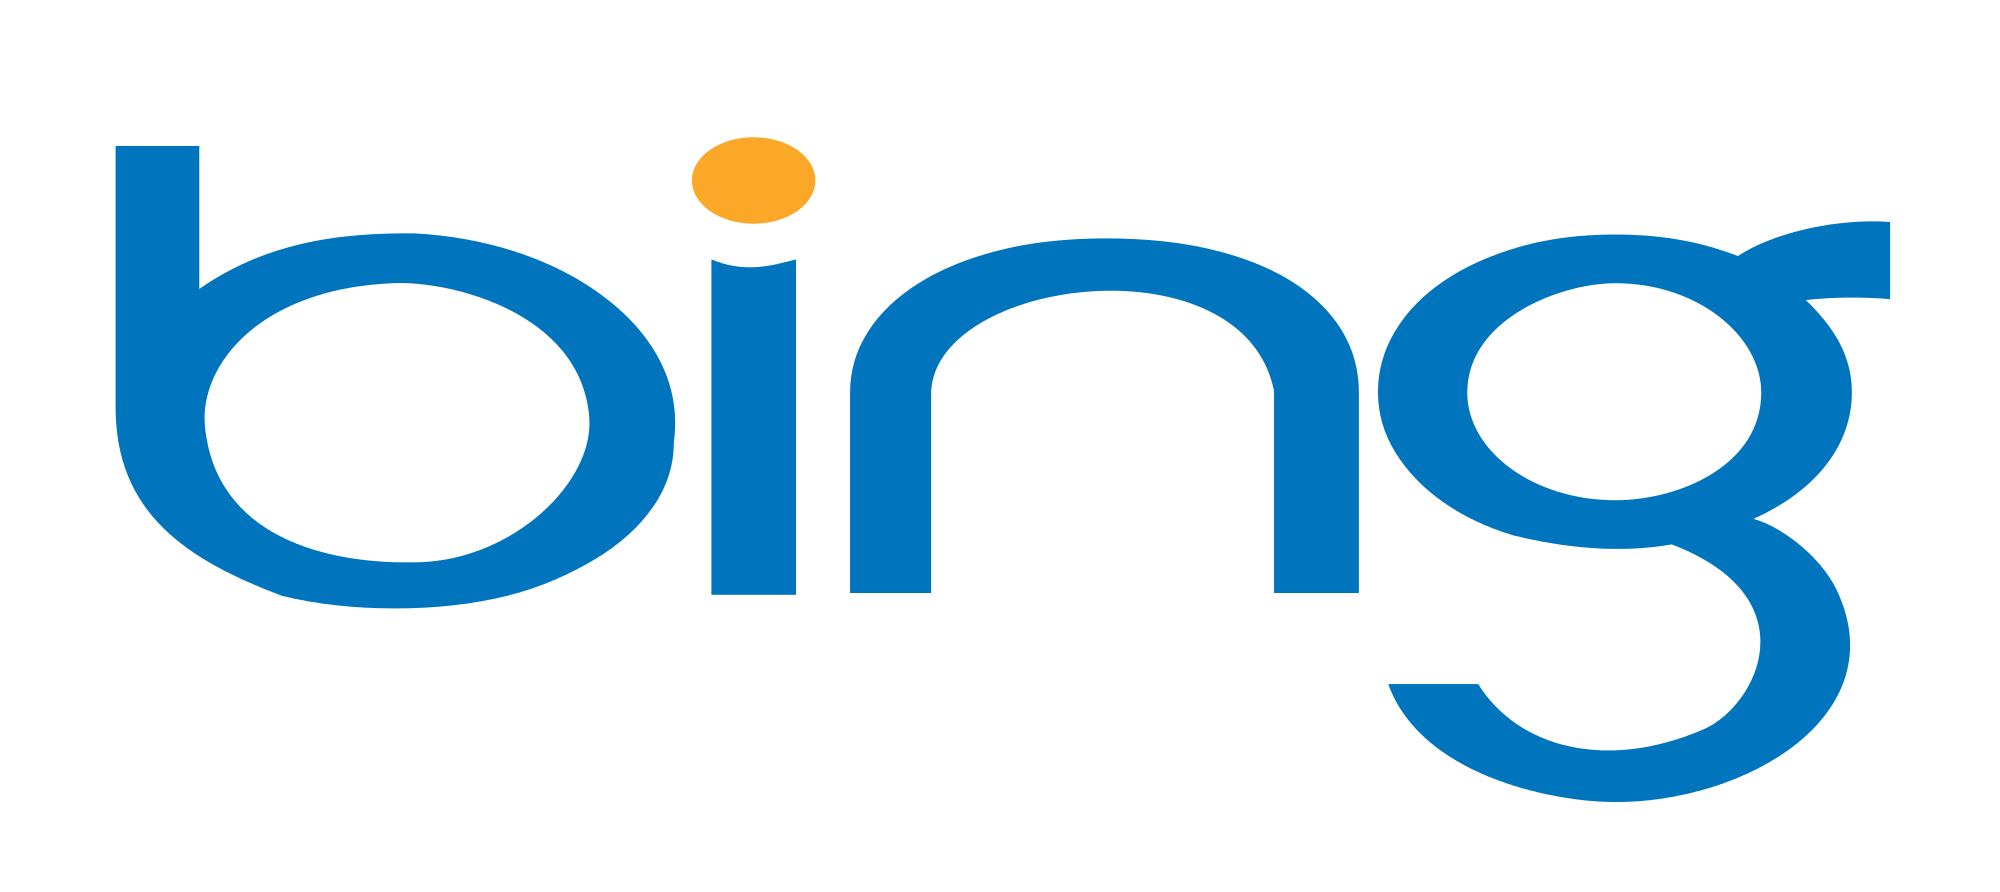 Bing Rewards Logo - Bing Rewards ! Bing Rewards Dashboard ! Bing Rewards Bot to